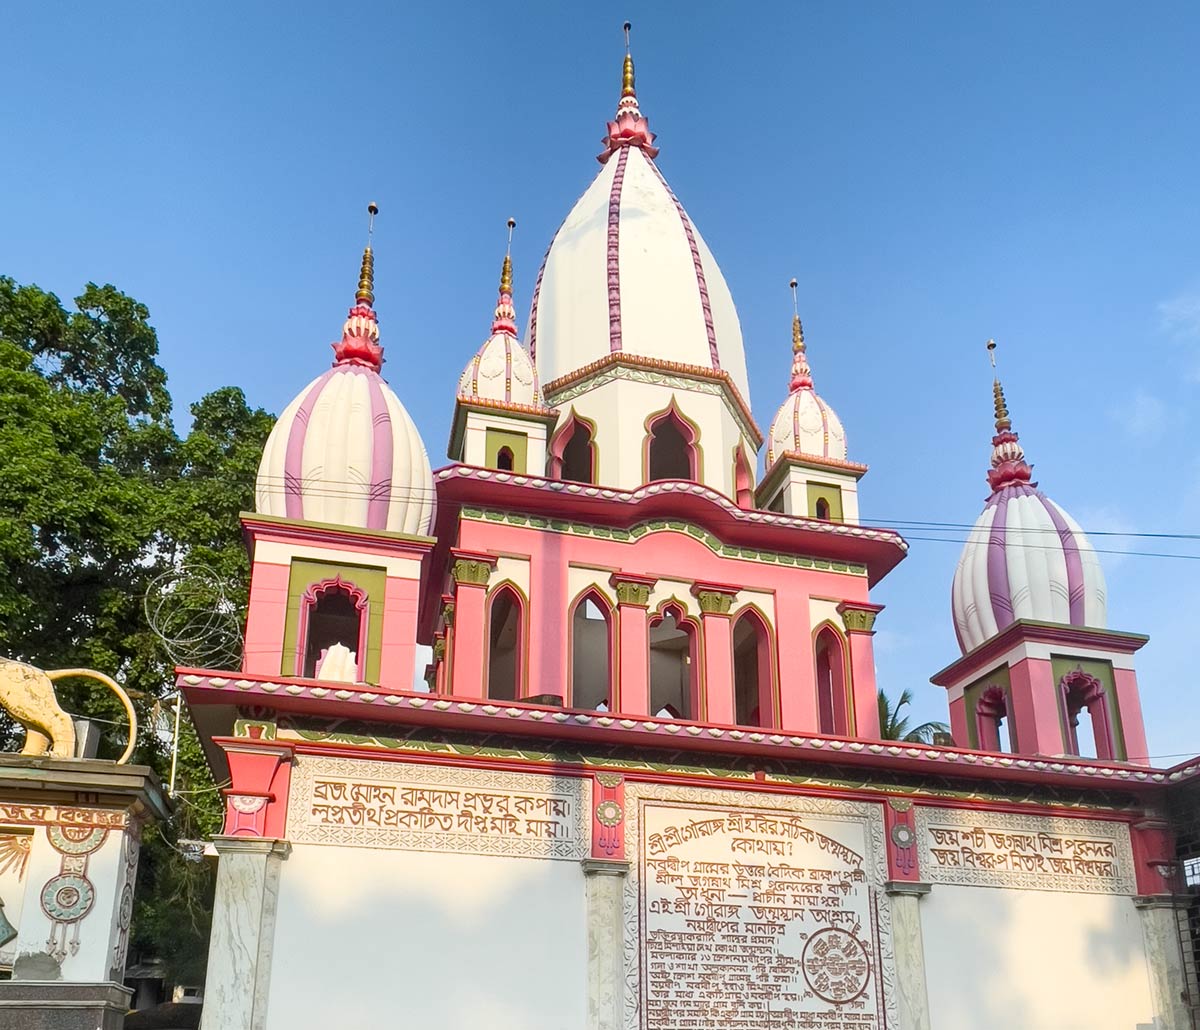 Eingang zum Geburtsort Tempel von Sri Chaitanya, Nabadwip